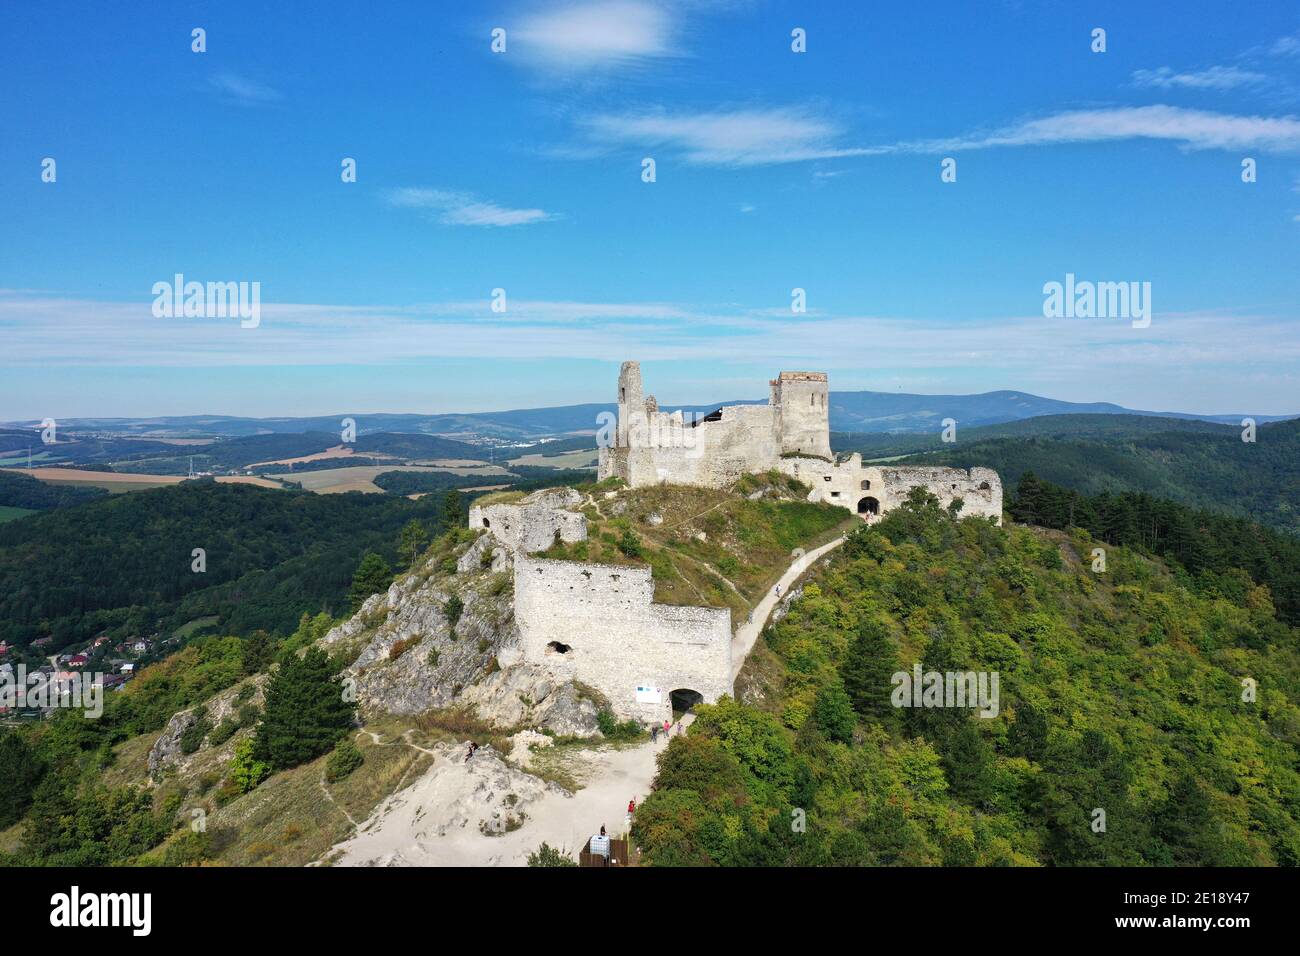 Vue aérienne du château de Cachtice dans le village de Cachtice En Slovaquie Banque D'Images